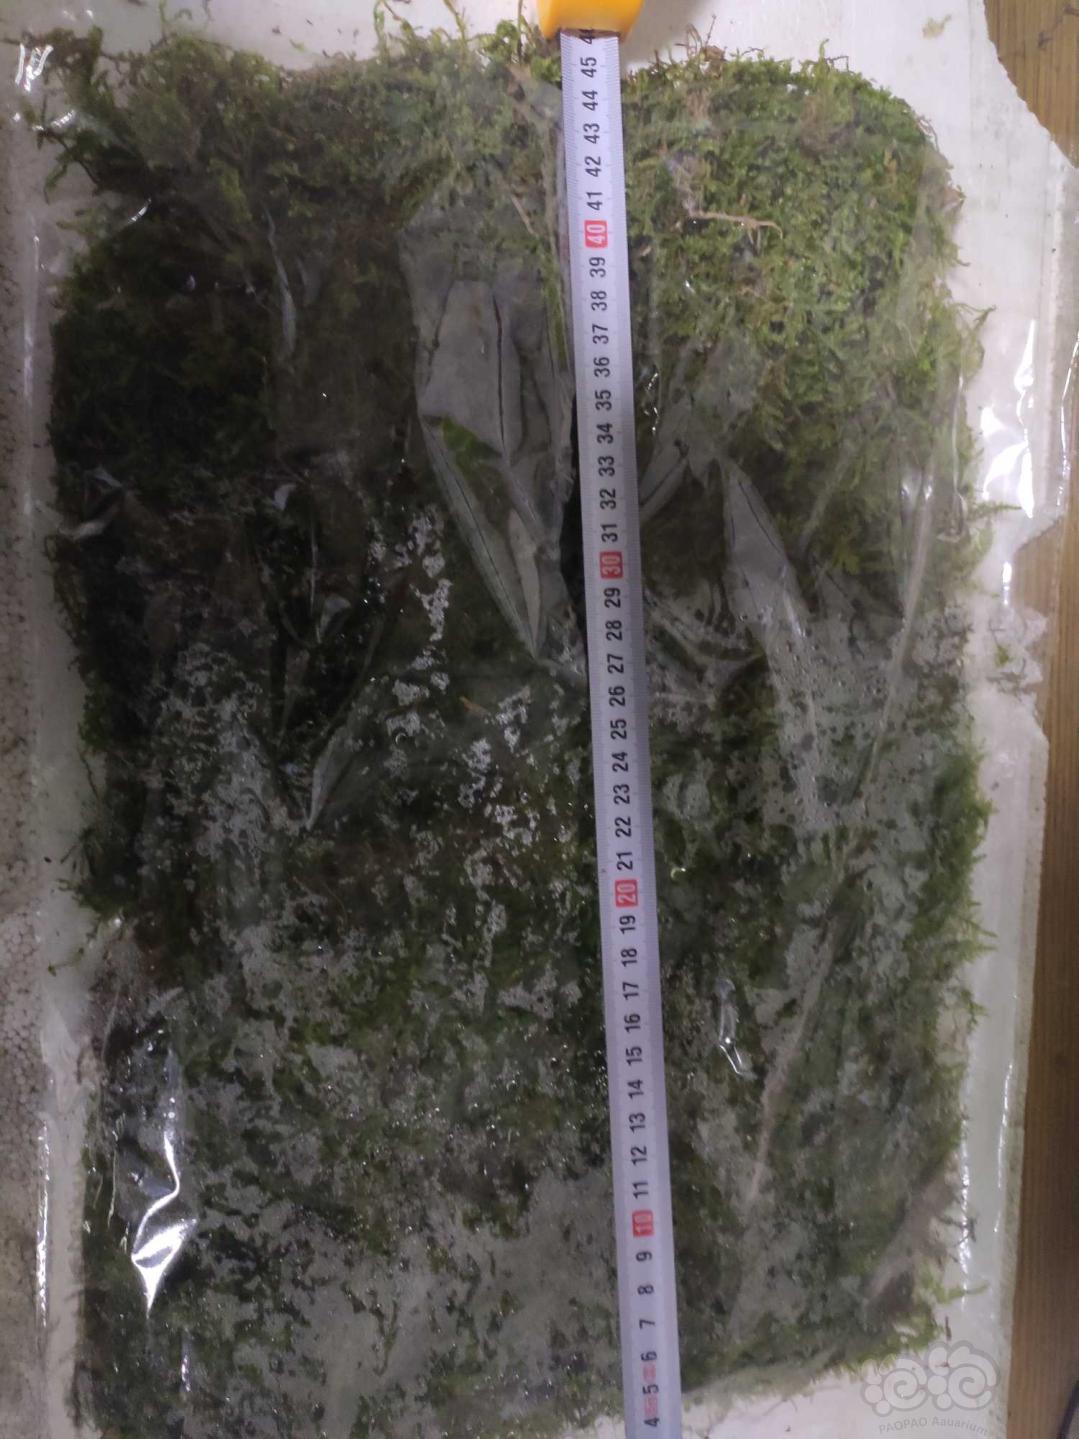 【水草】出售两片水陆缸造景苔藓植物-图6